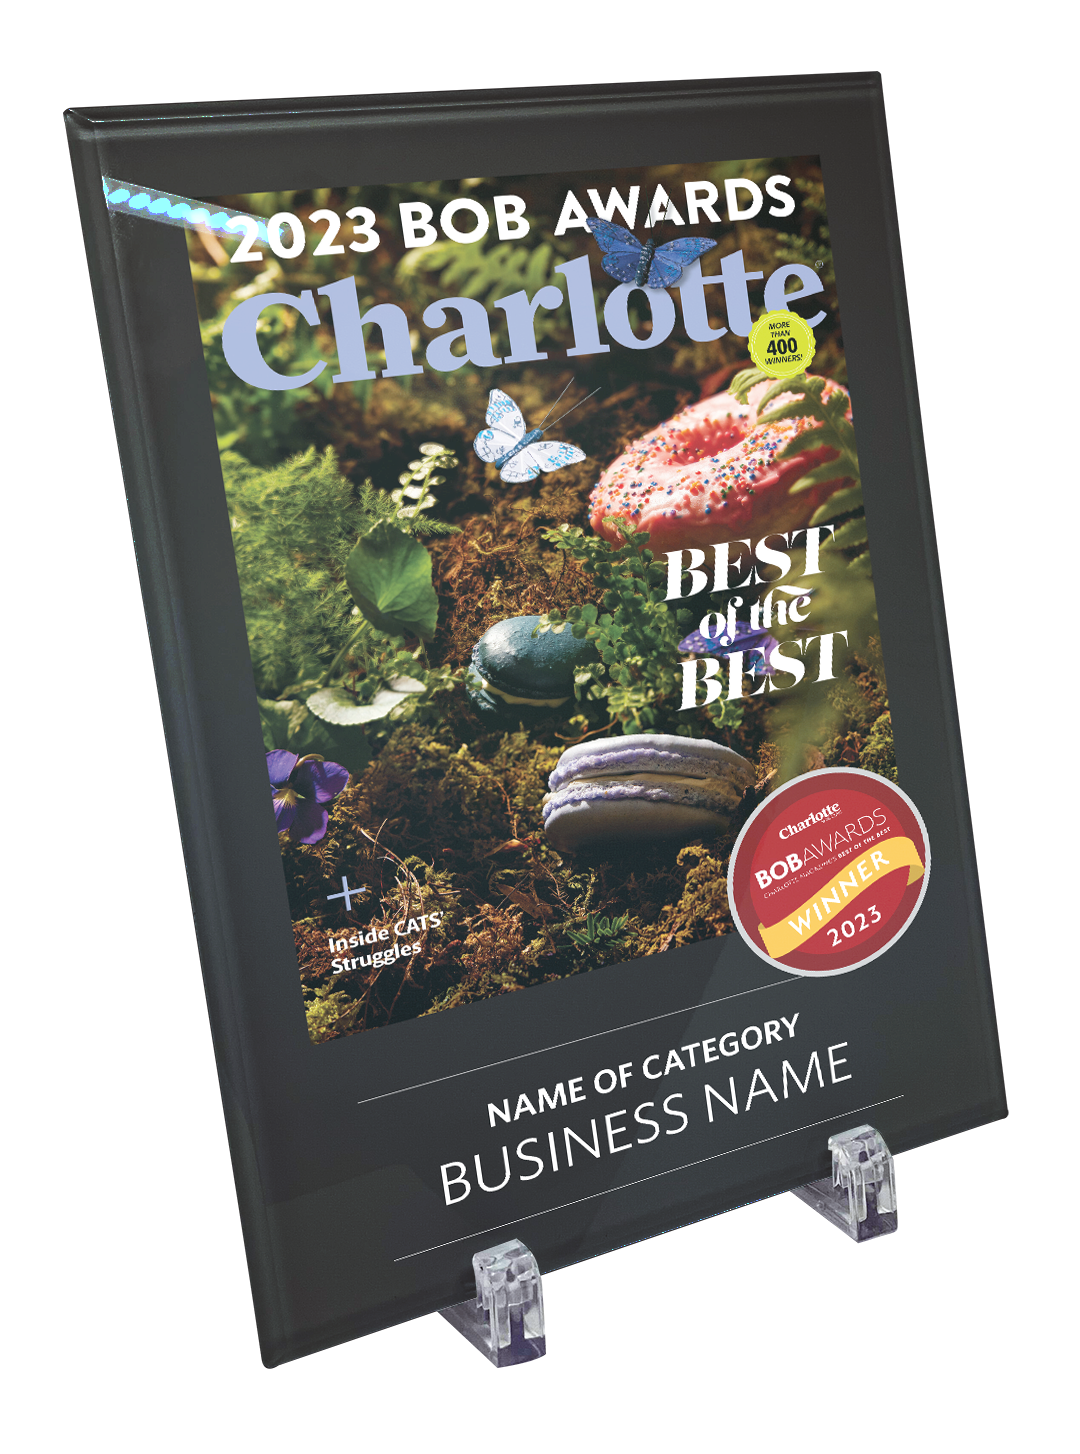 Charlotte Magazine "BOB" Award Plaque - Glass